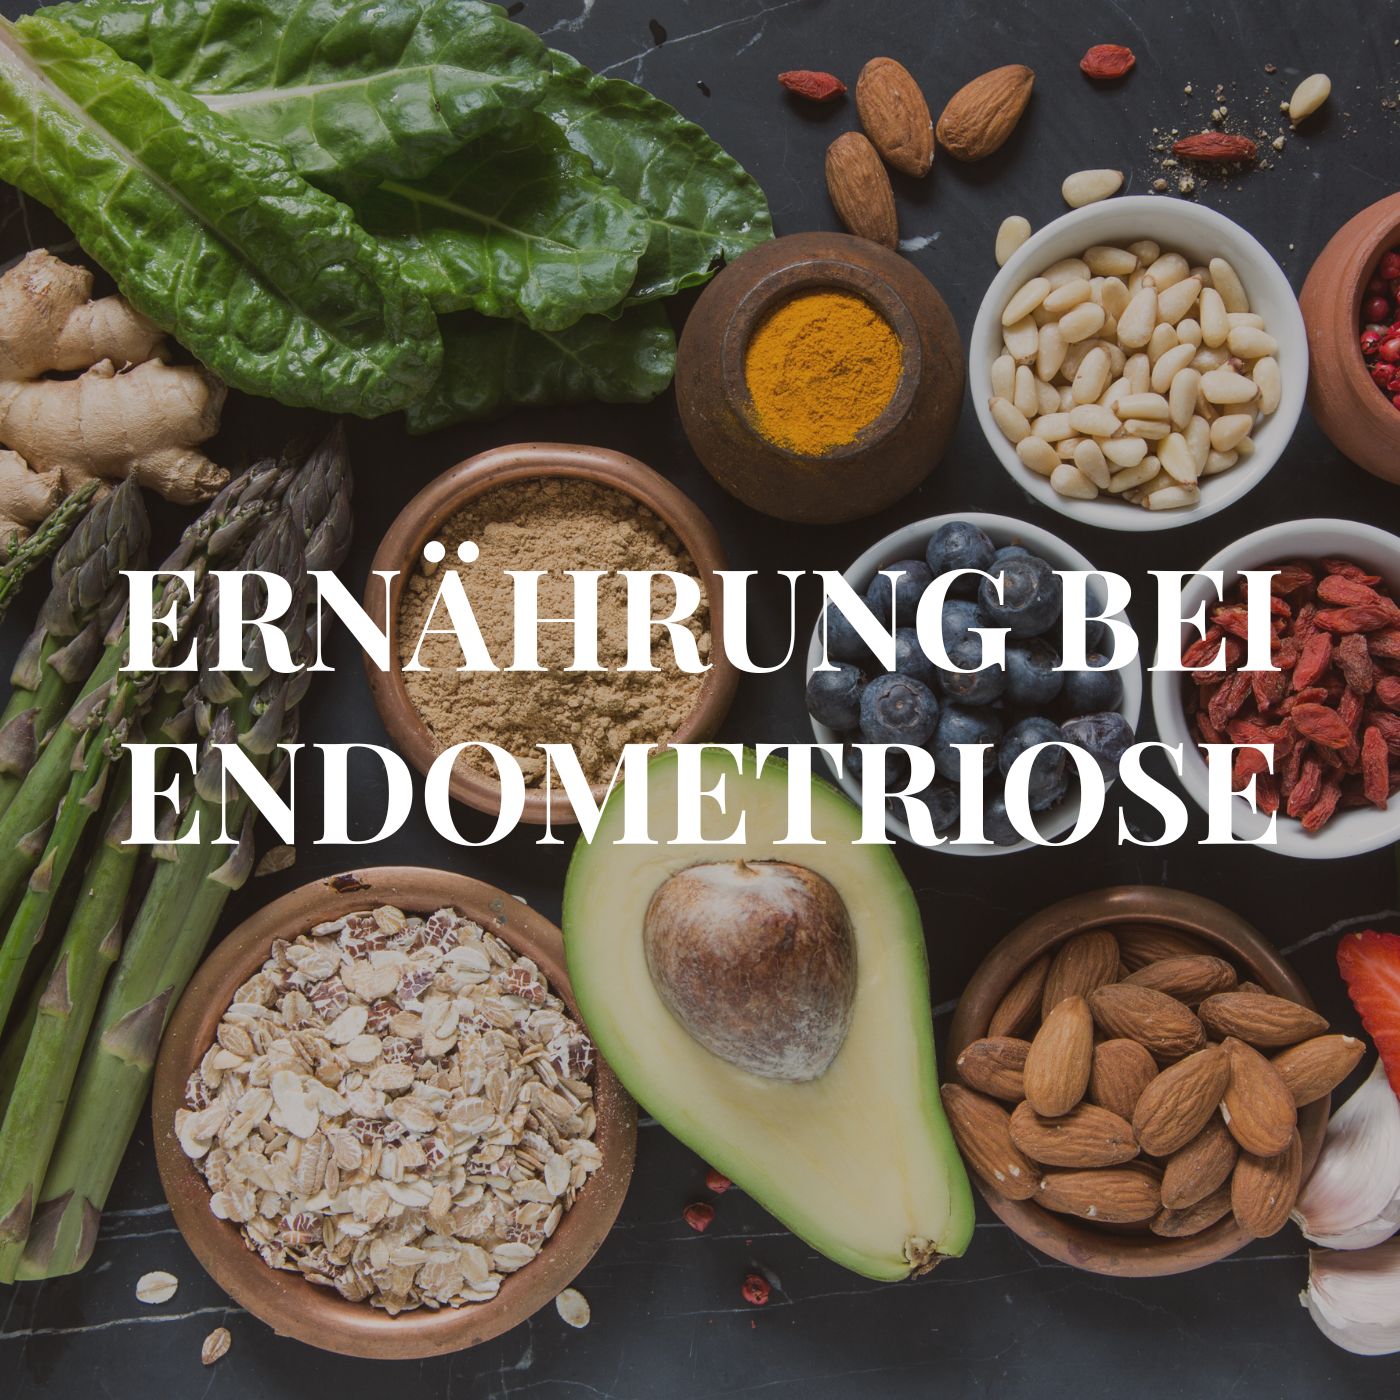 Titelbild Ernährung bei Endometriose, im Hintergrund verschiedene pflanzliche Lebensmittel, z.B. Avocado, Mandeln und Haferflocken